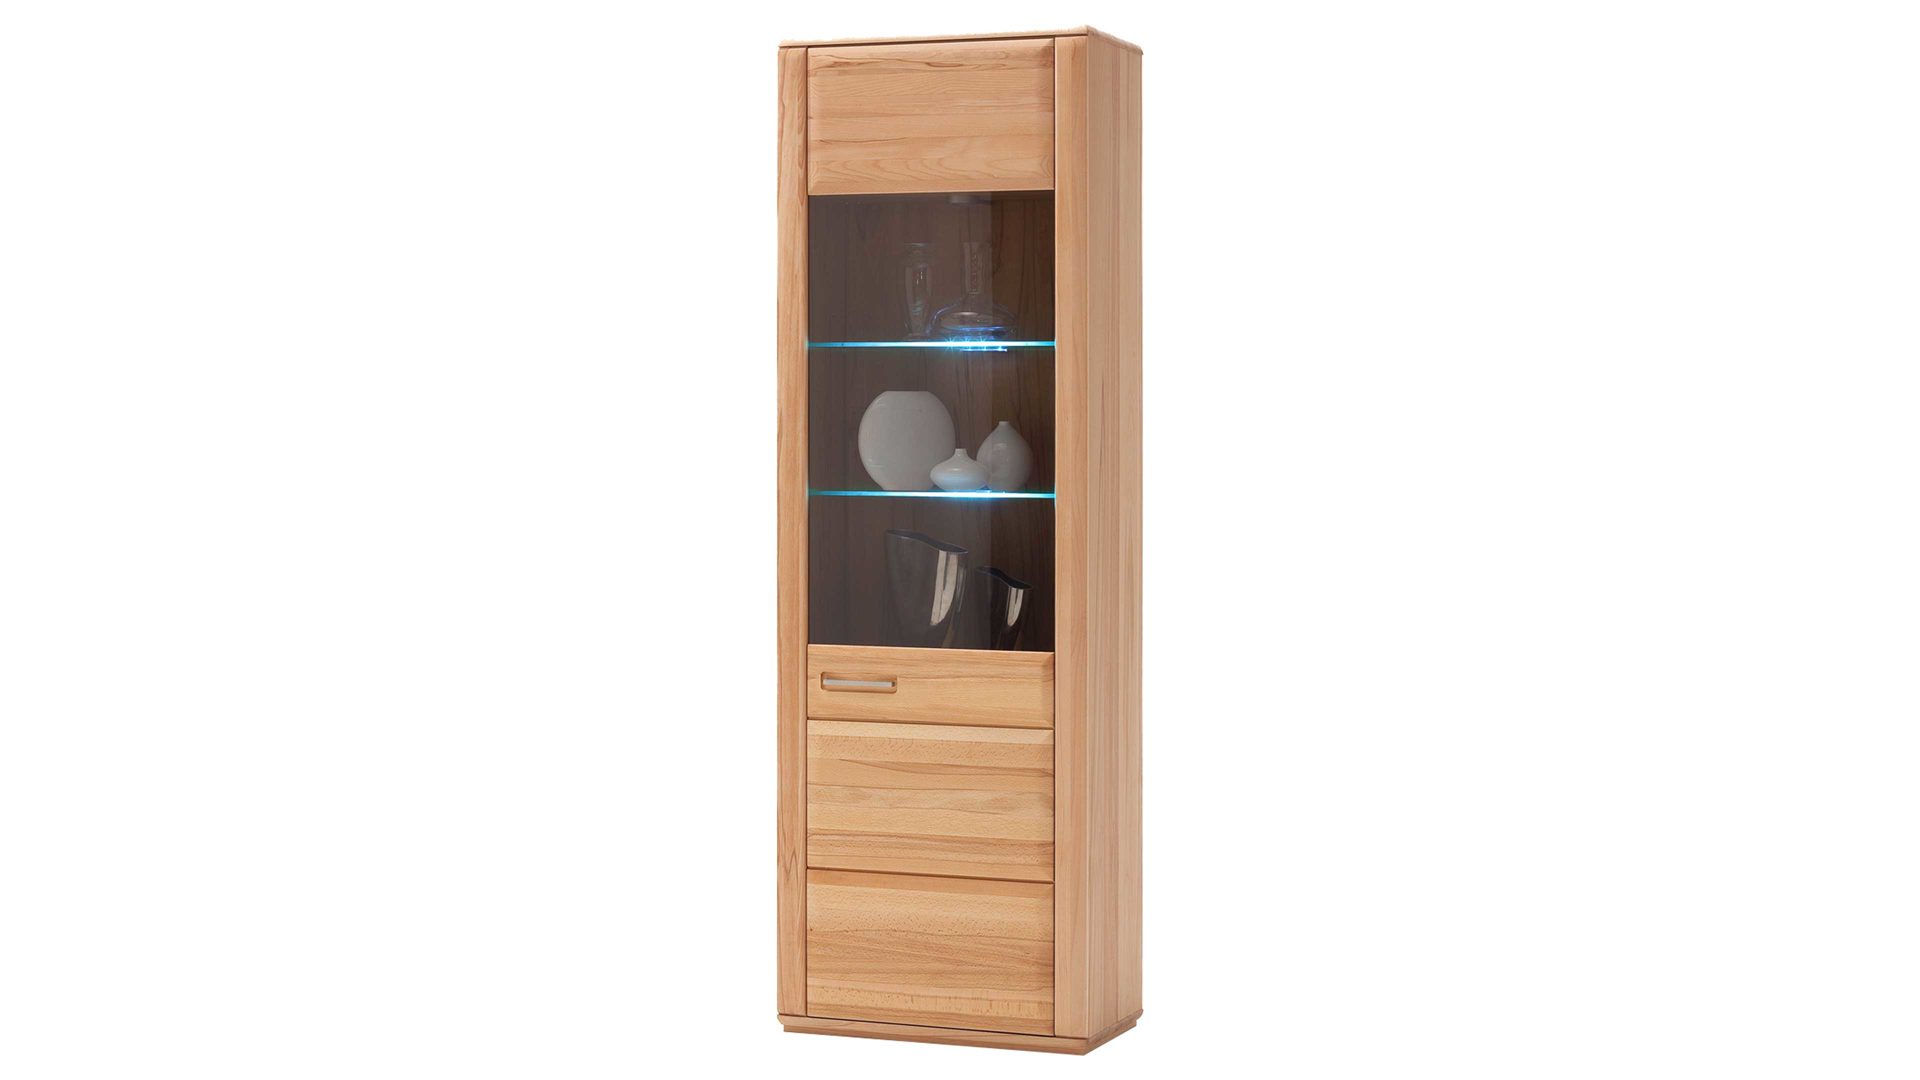 Vitrine Mca furniture aus Holz in Holzfarben Wohnprogramm Sena - Vitrinenschrank als Wohnzimmermöbel geölte Kernbuche – eine Tür